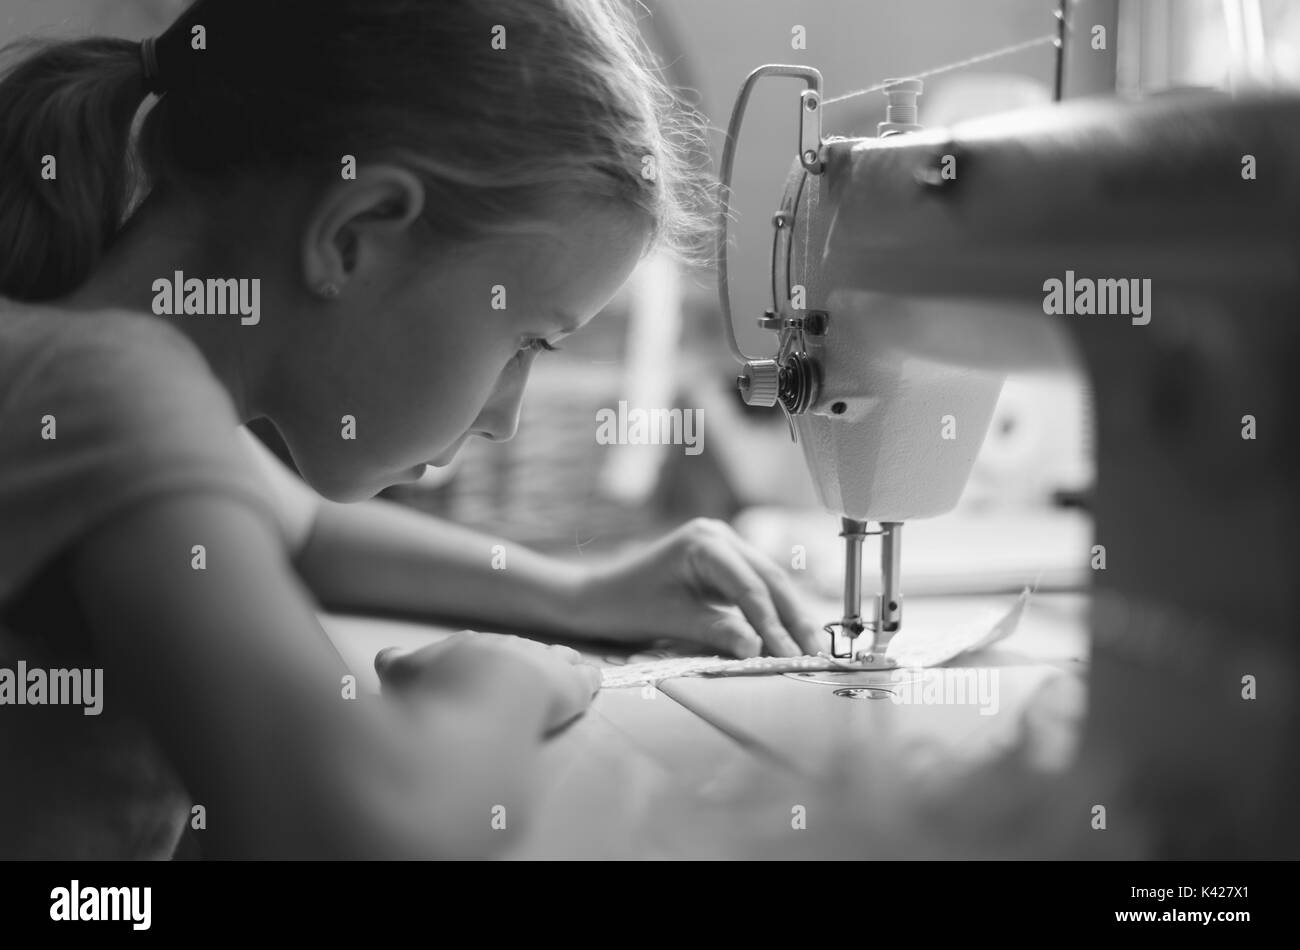 Petite fille travaillant sur machine à coudre à la maison. Noir et blanc. Banque D'Images